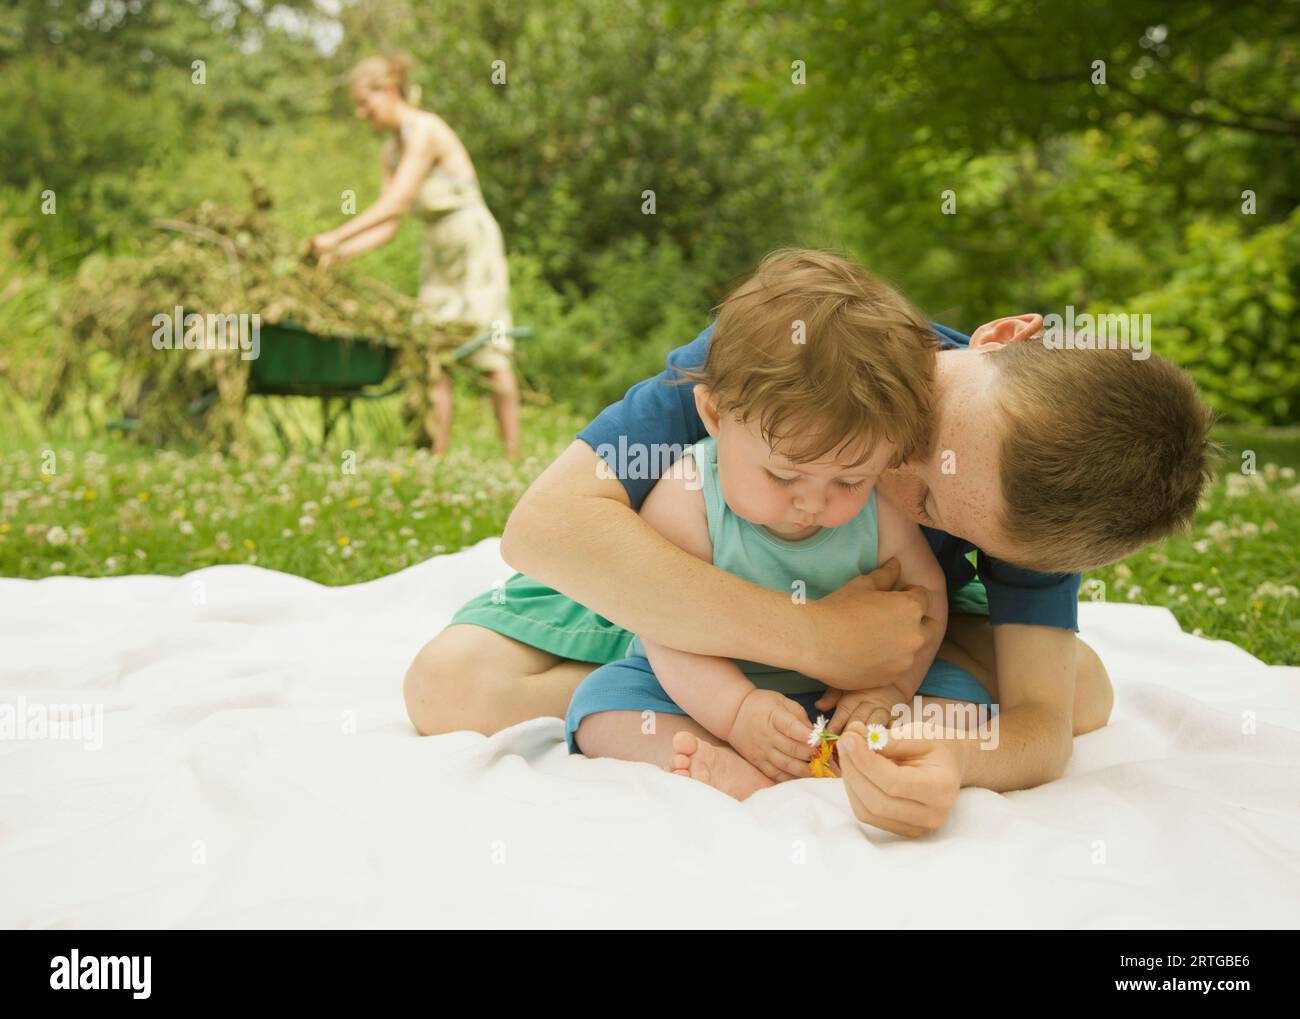 Jeune garçon assis dans un jardin en embrassant une embrasser son petit frère Banque D'Images